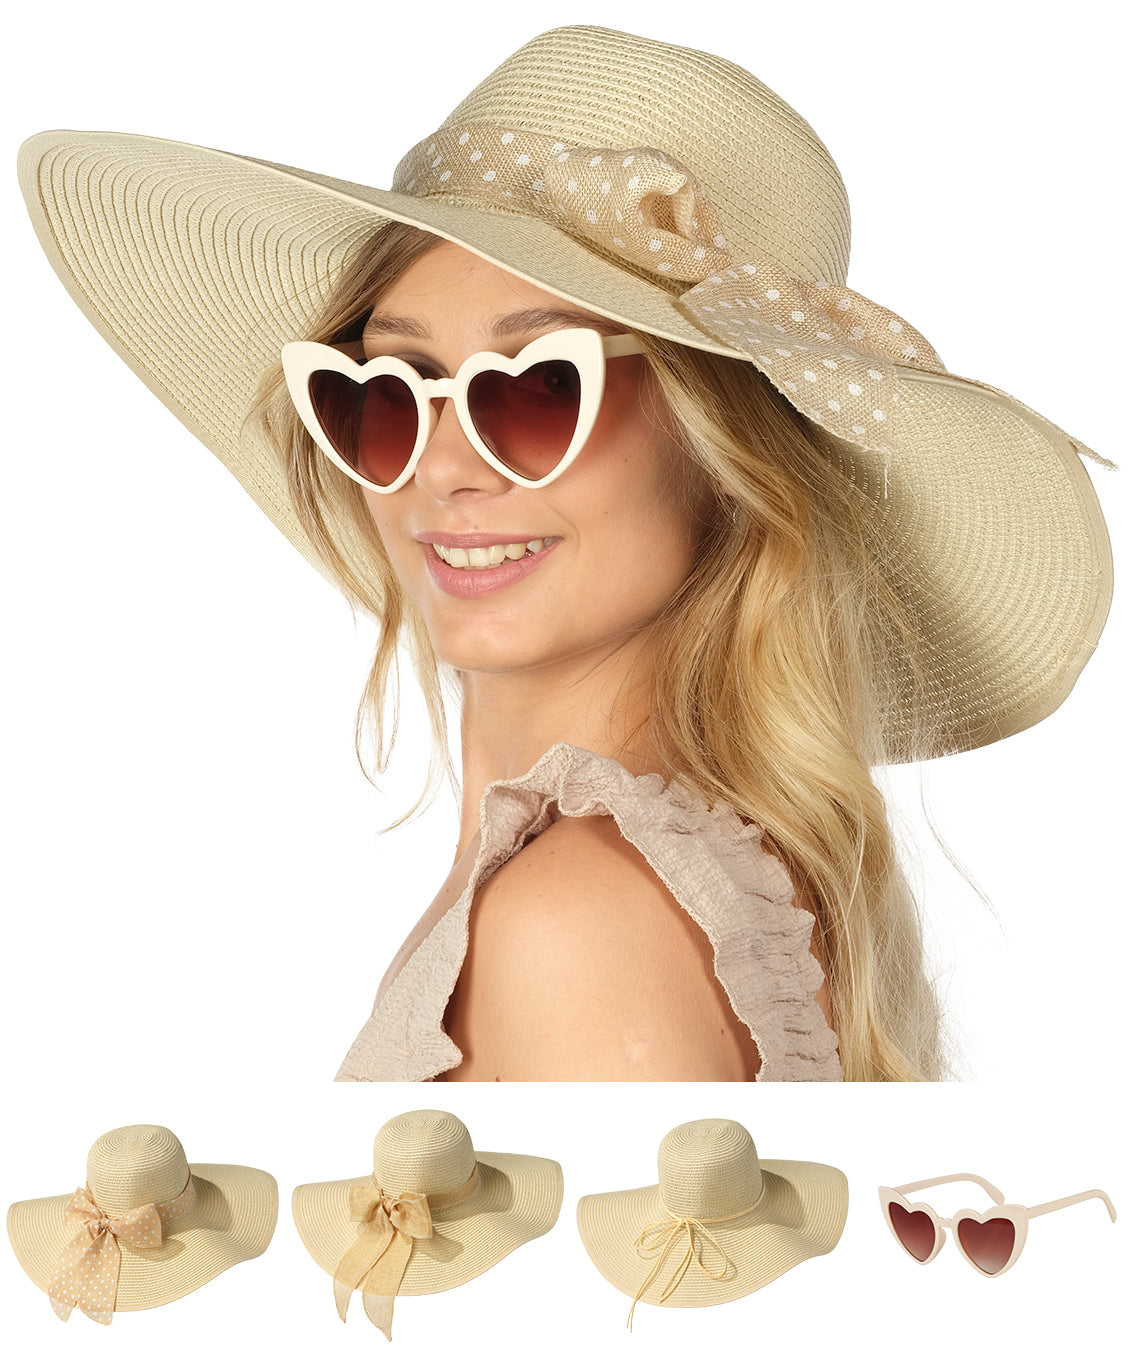  lydia deetz hat, sombreros de verano